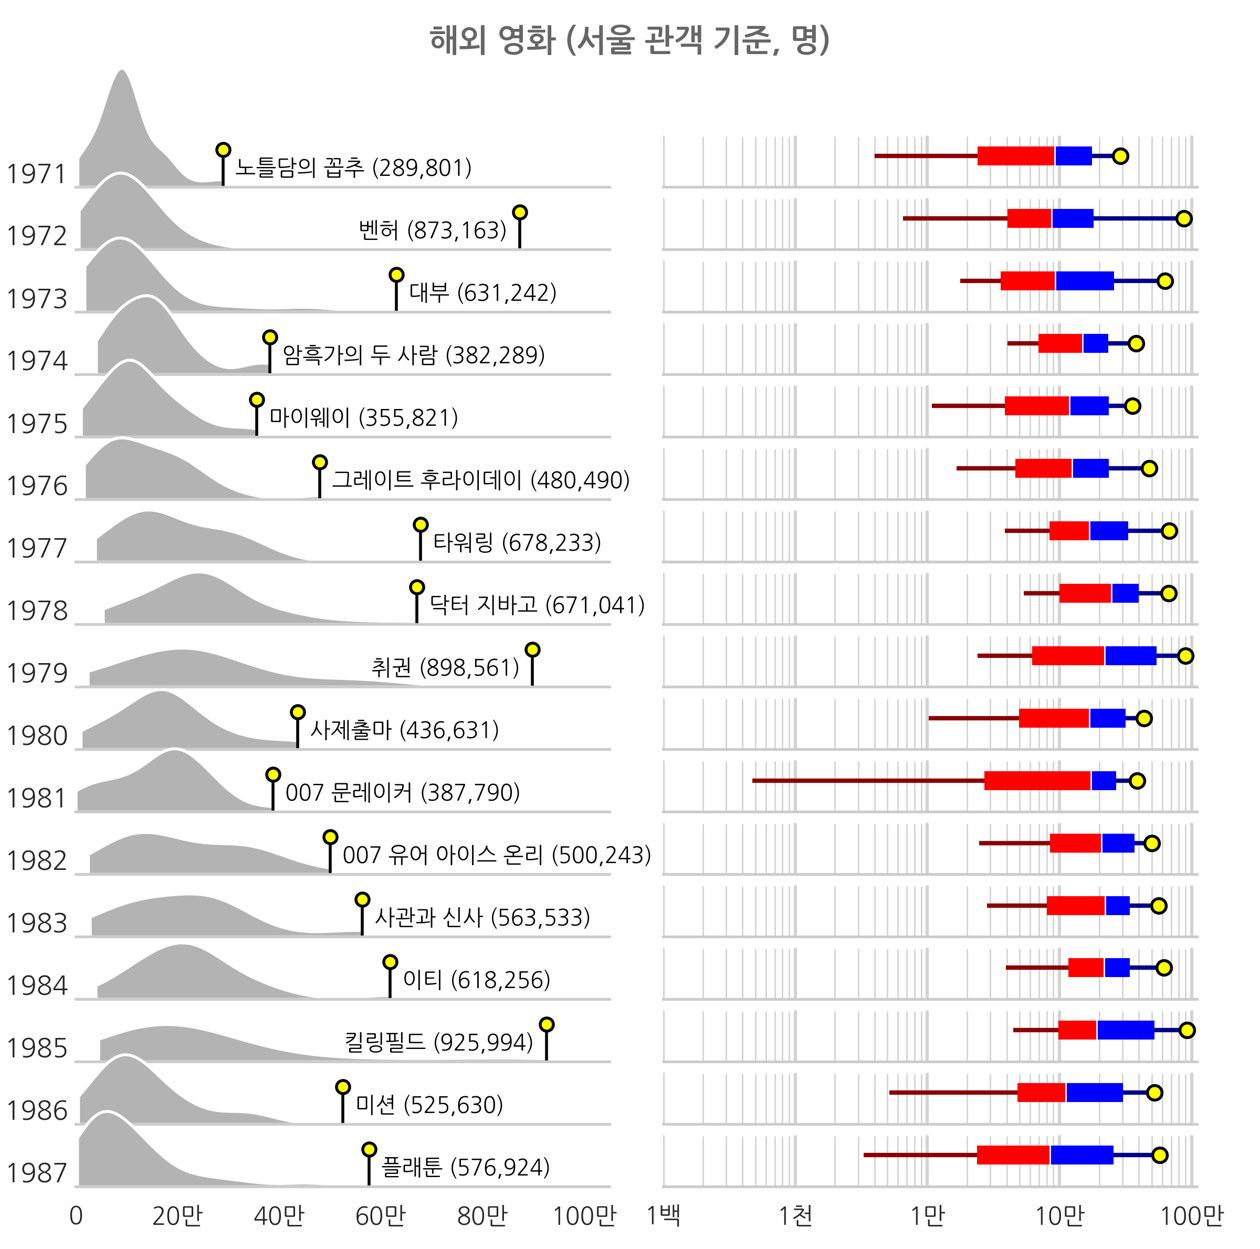 1971-1987년 해외영화 서울 관객 기준 분포도, 하단 상세 내용 참조